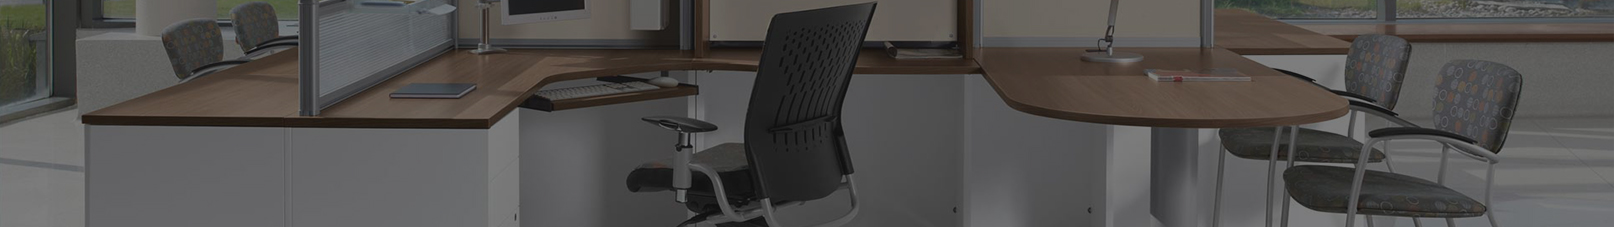 Chair Mats